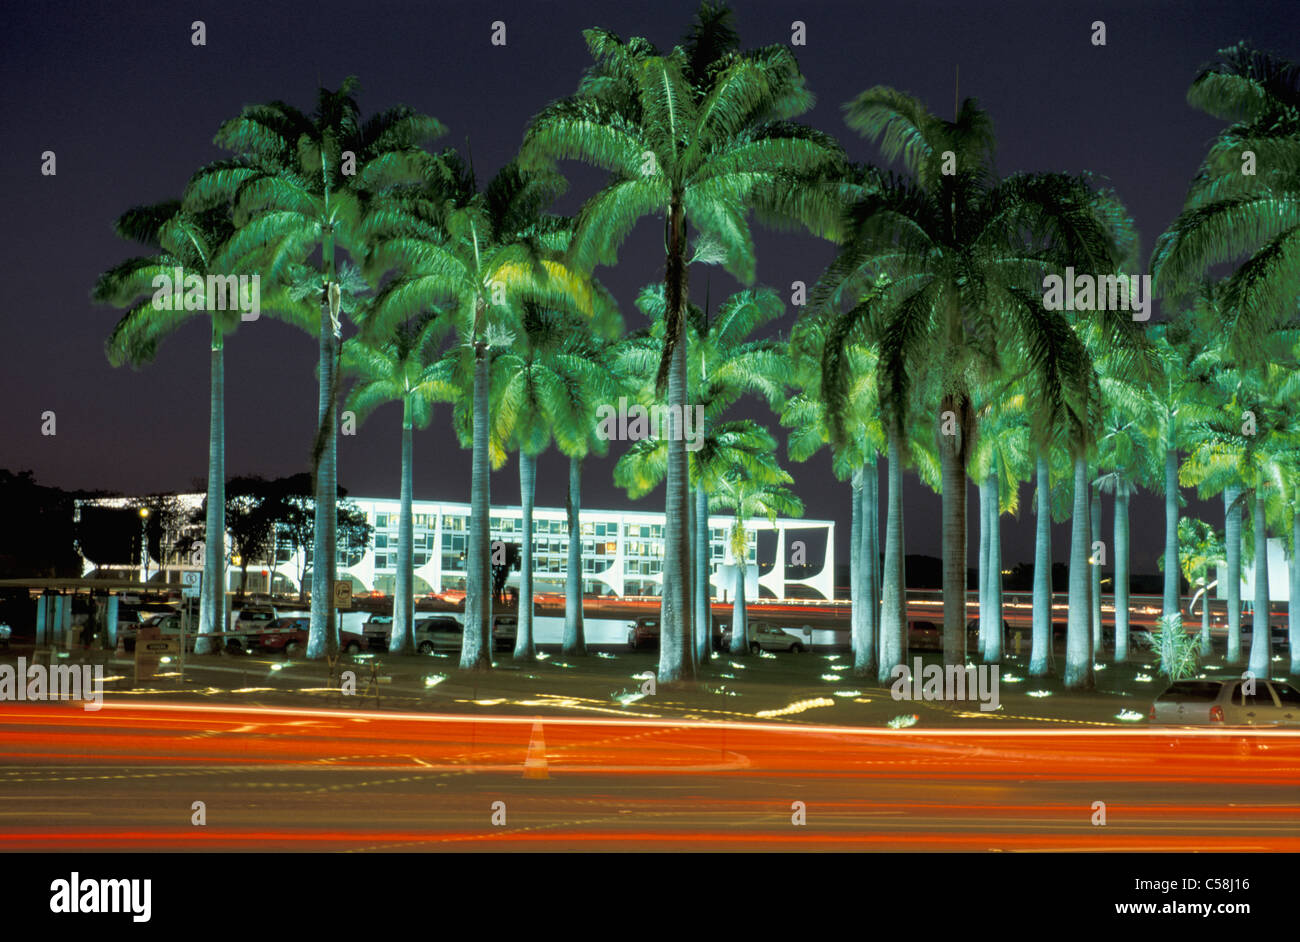 Maison de la Cour fédérale, Brasilia, Brésil, Amérique du Sud, de nuit, des palmiers Banque D'Images